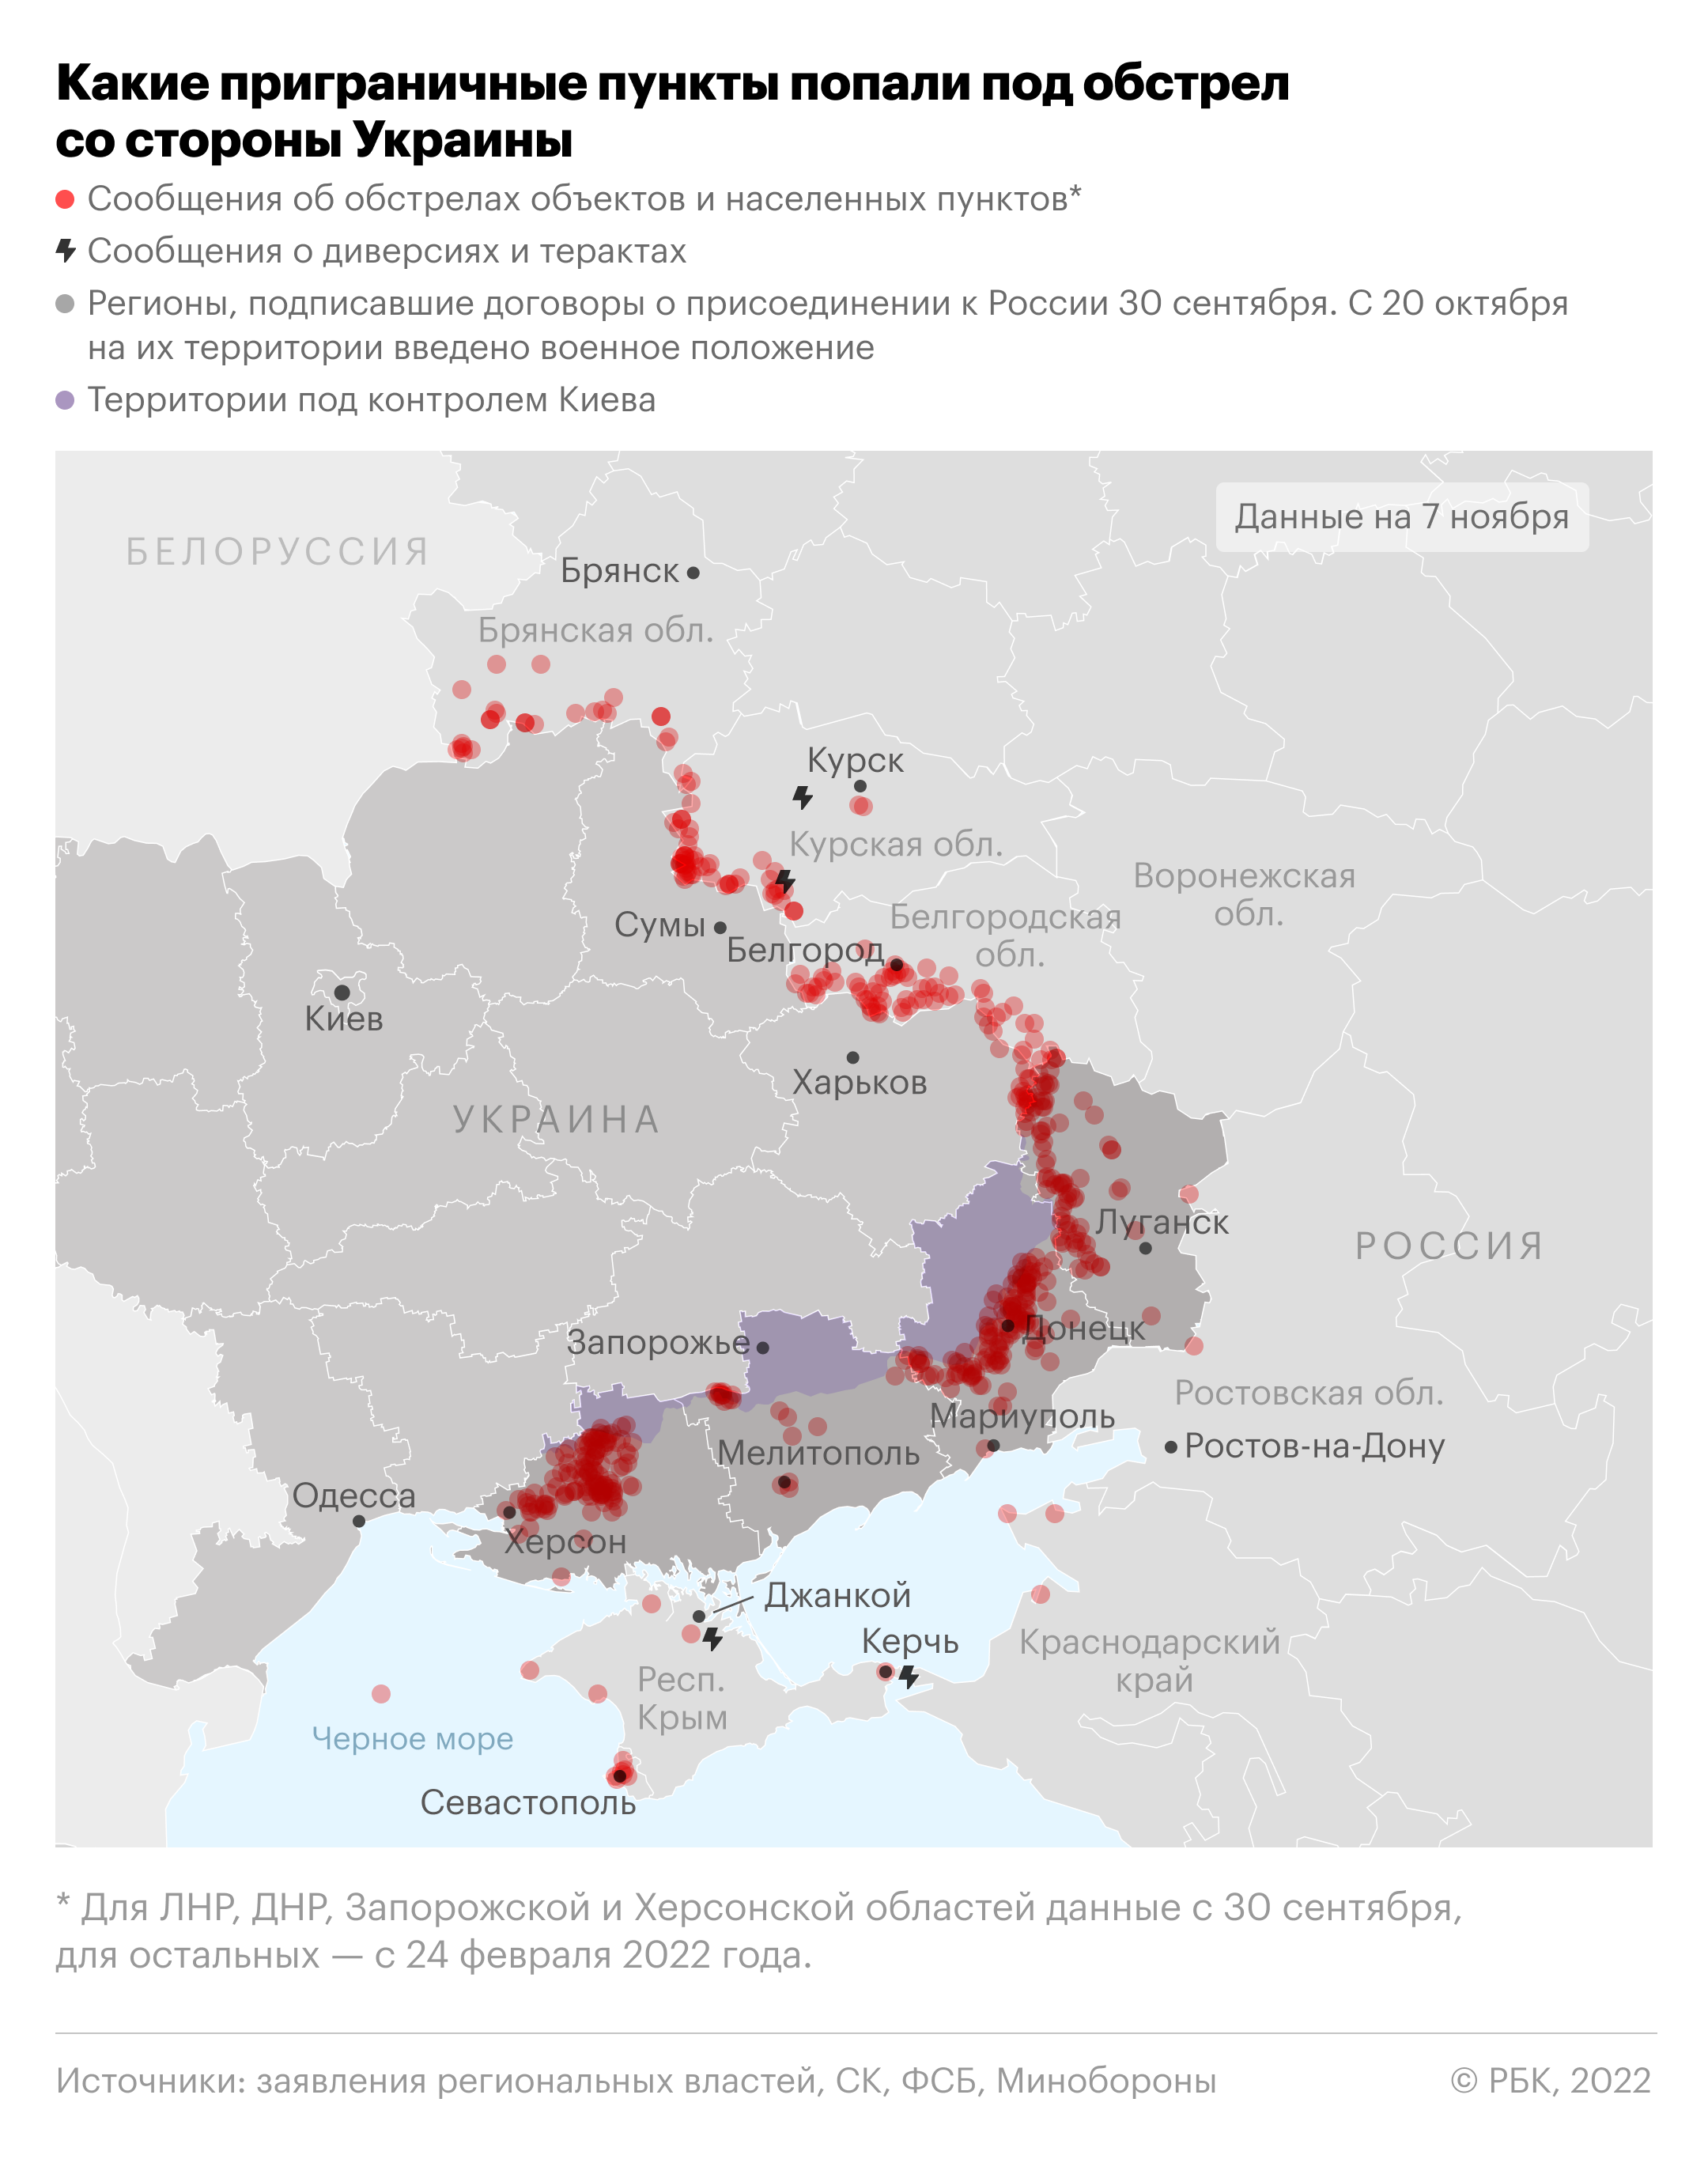 Какие приграничные пункты попали под обстрел со стороны Украины. Карта"/>













